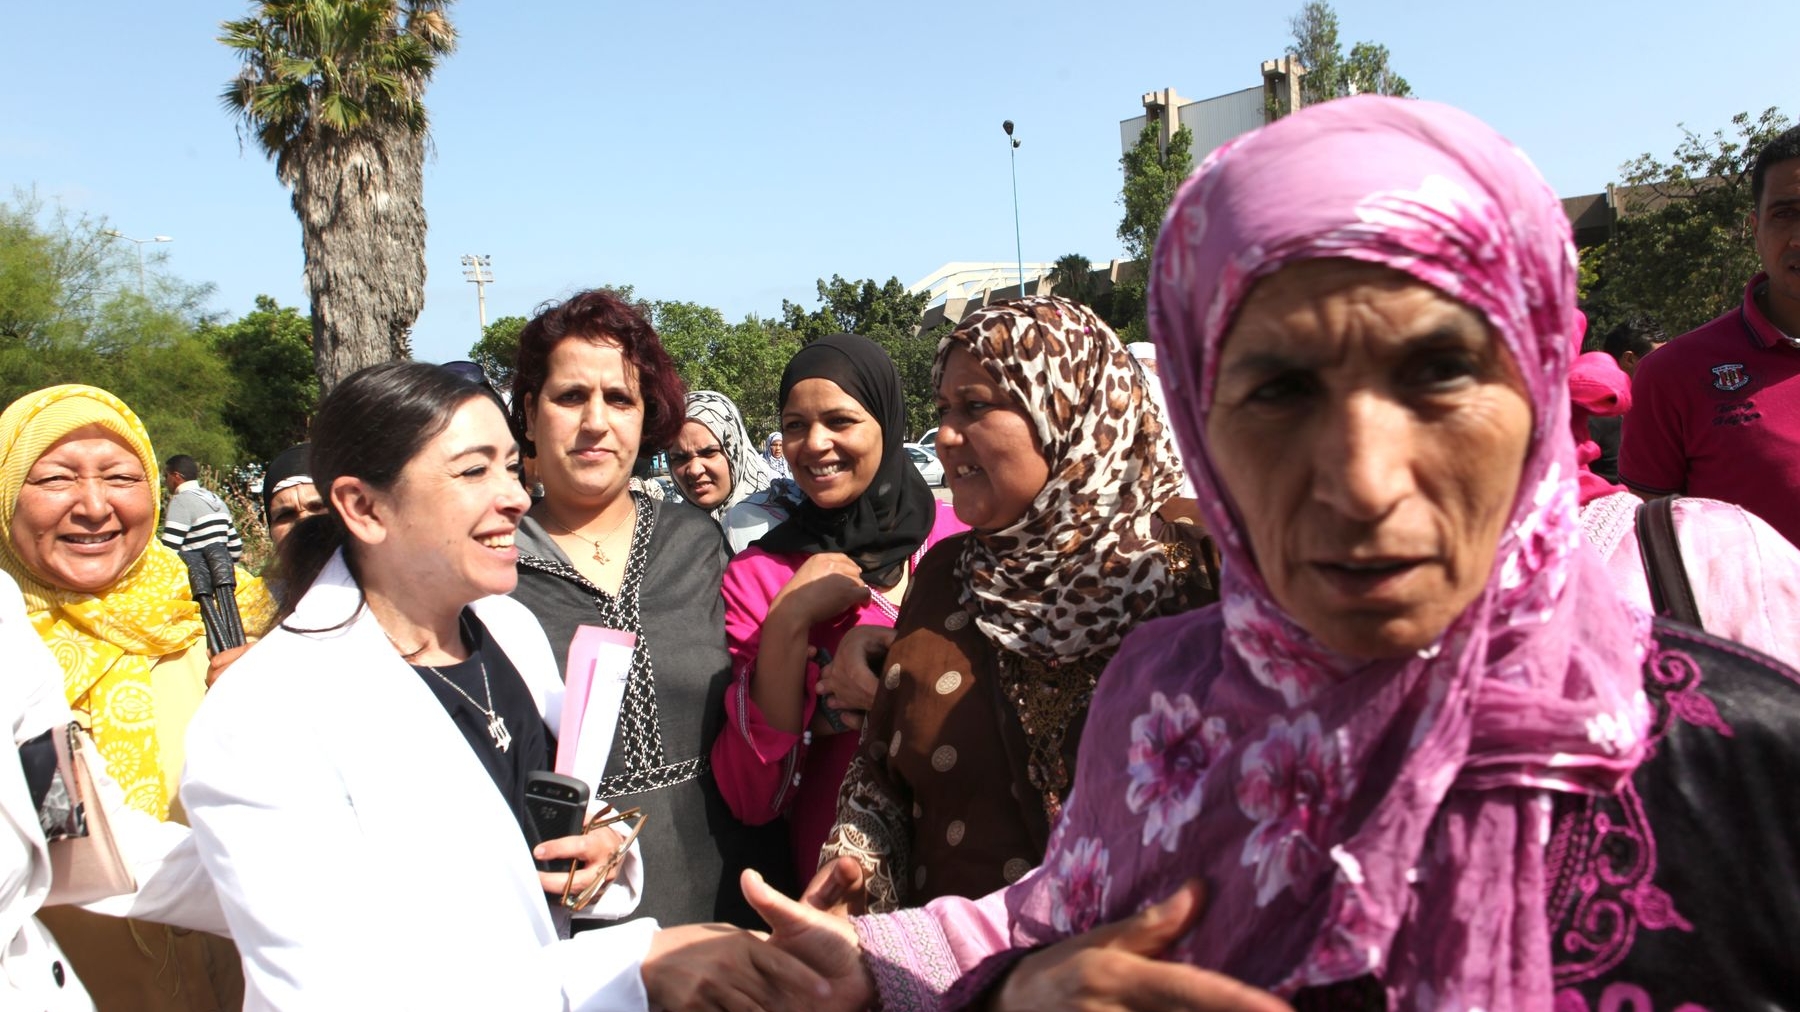 "Merci pour votre accueil chaleureux", semble dire Yasmina Baddou à ces militantes
